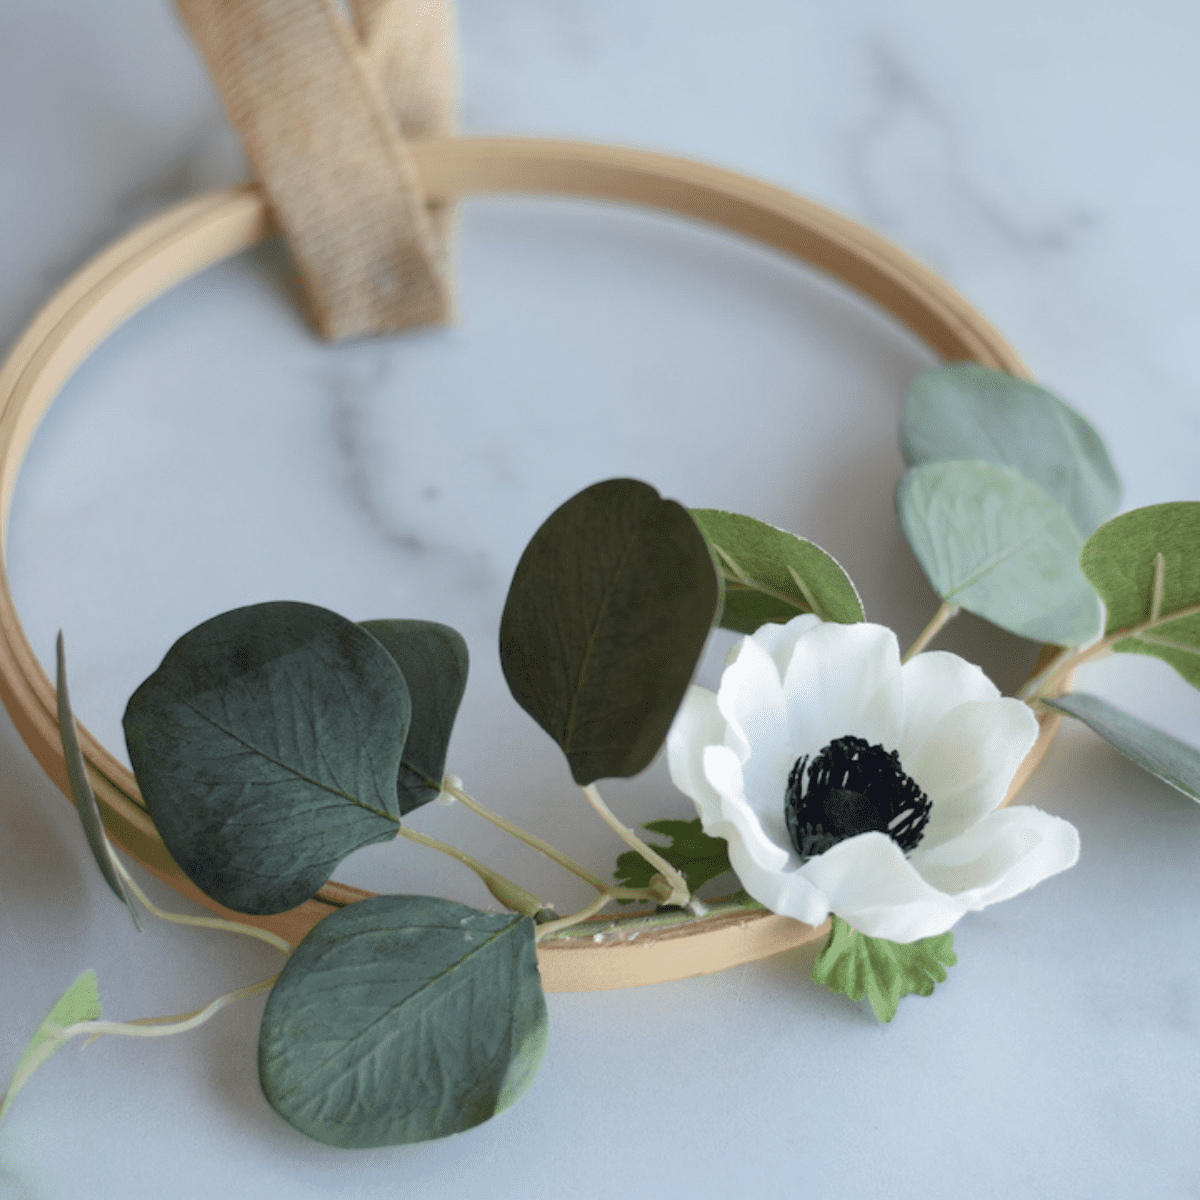 DIY Floral Embroidery Hoop Wreath